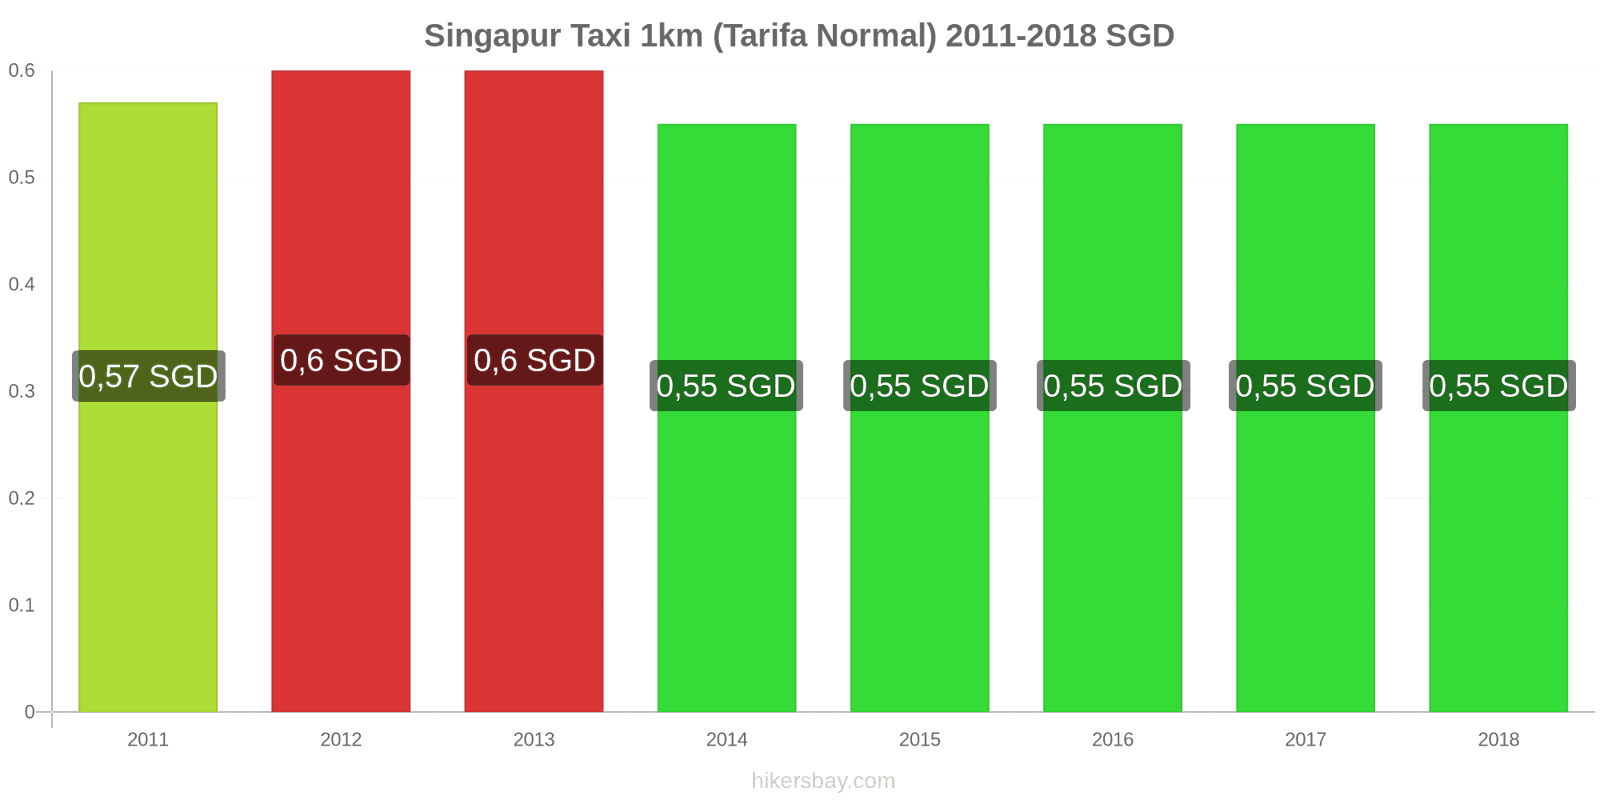 Singapur cambios de precios Taxi 1km (tarifa normal) hikersbay.com